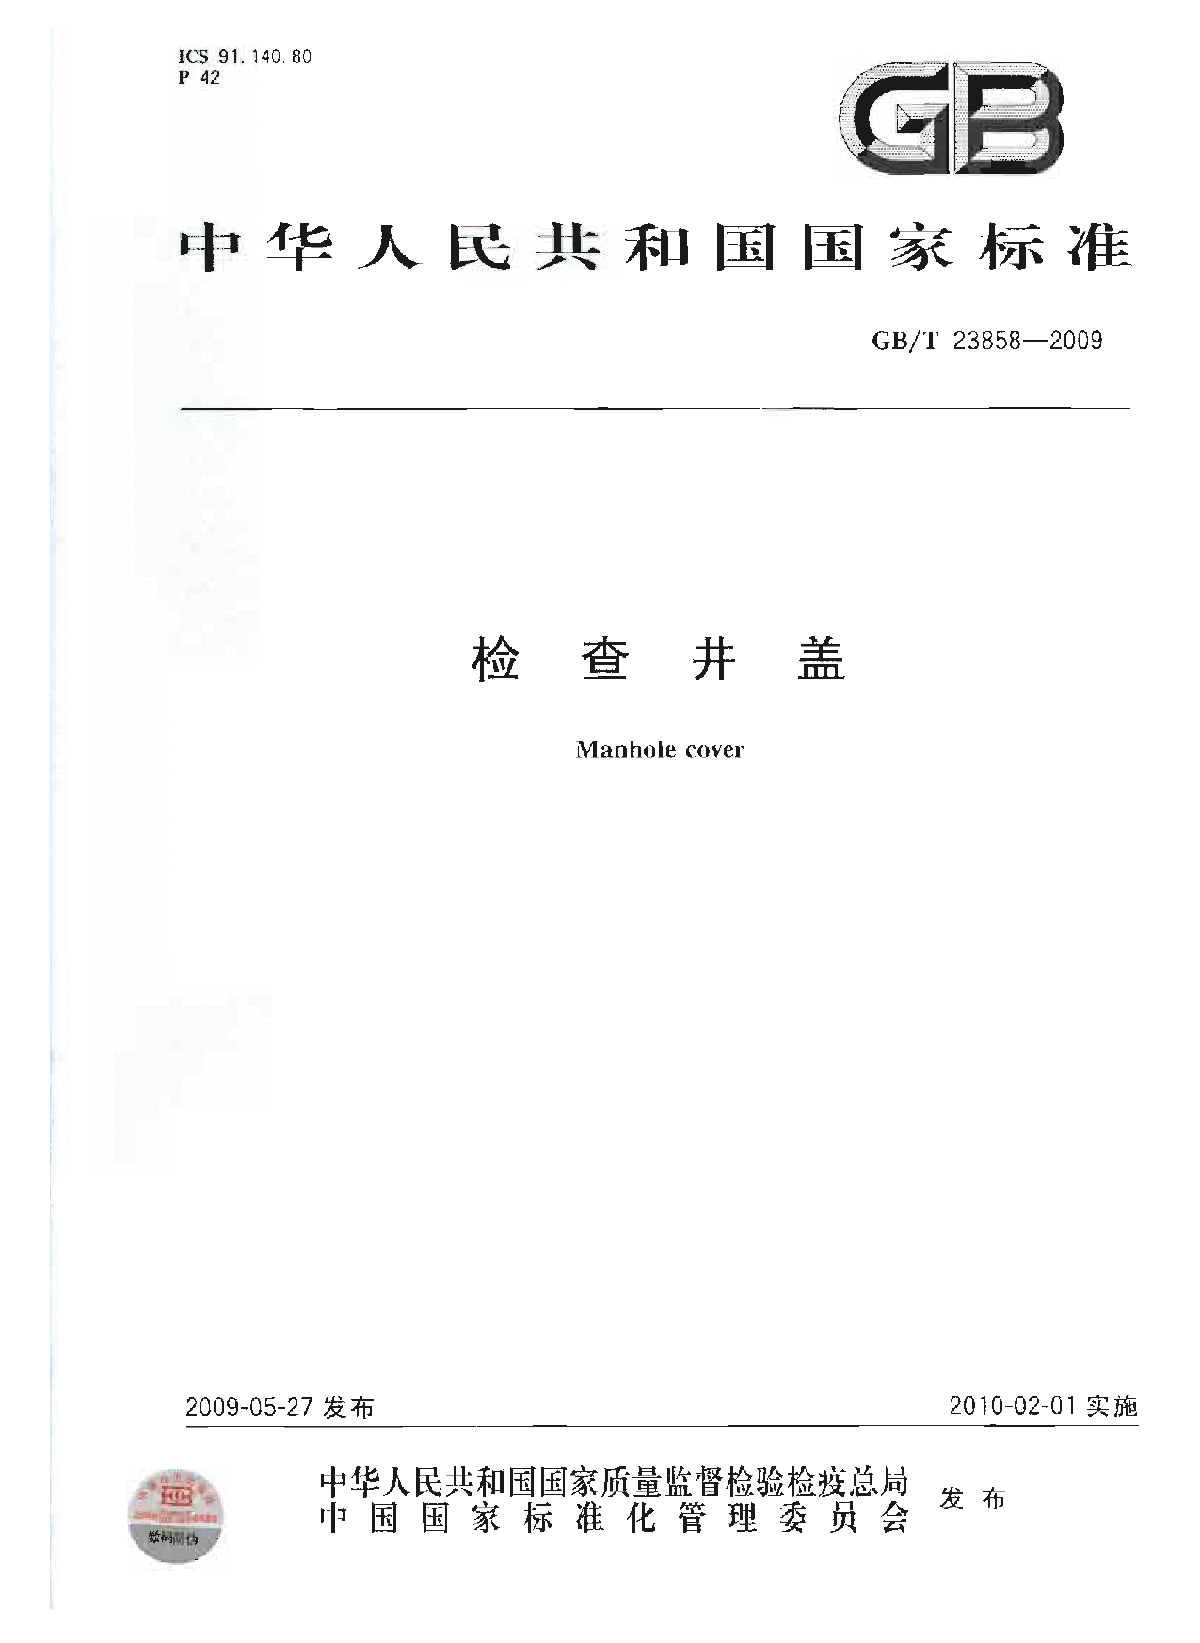 GBT 23858-2009 检查井盖.pdf